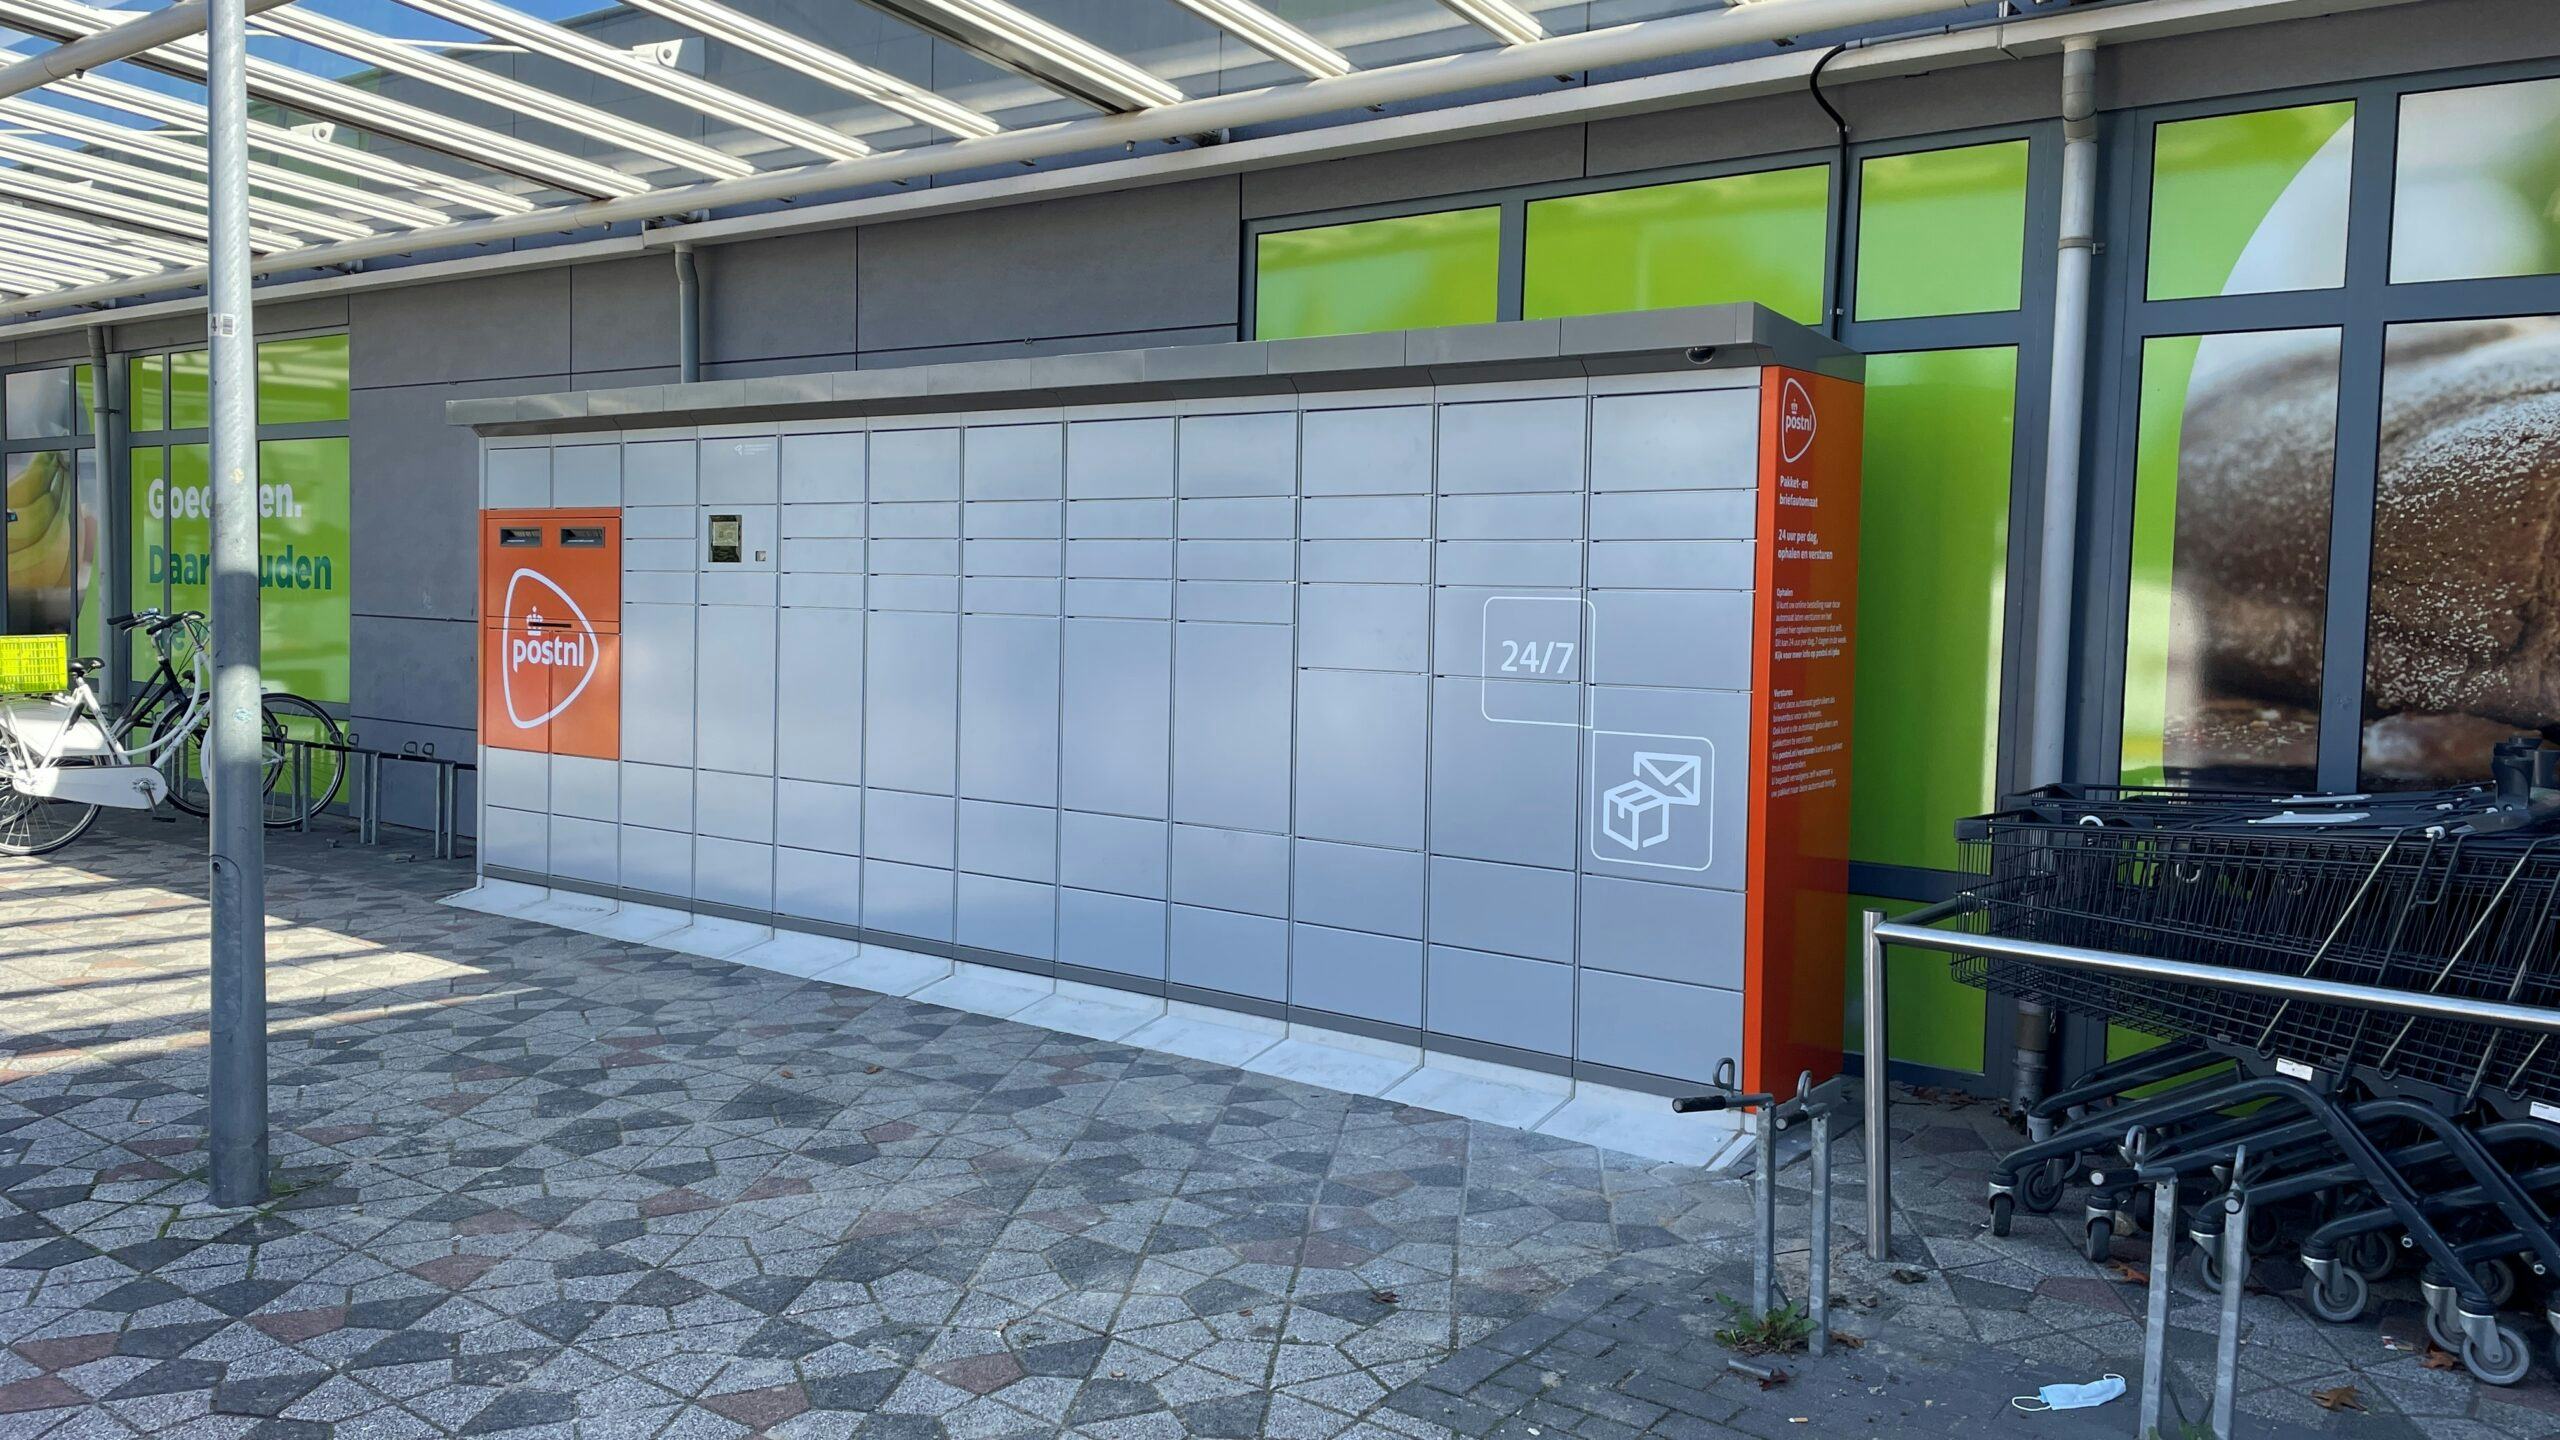 Roux Aardbei fundament Plus zet groot aantal automaten van PostNL bij winkels